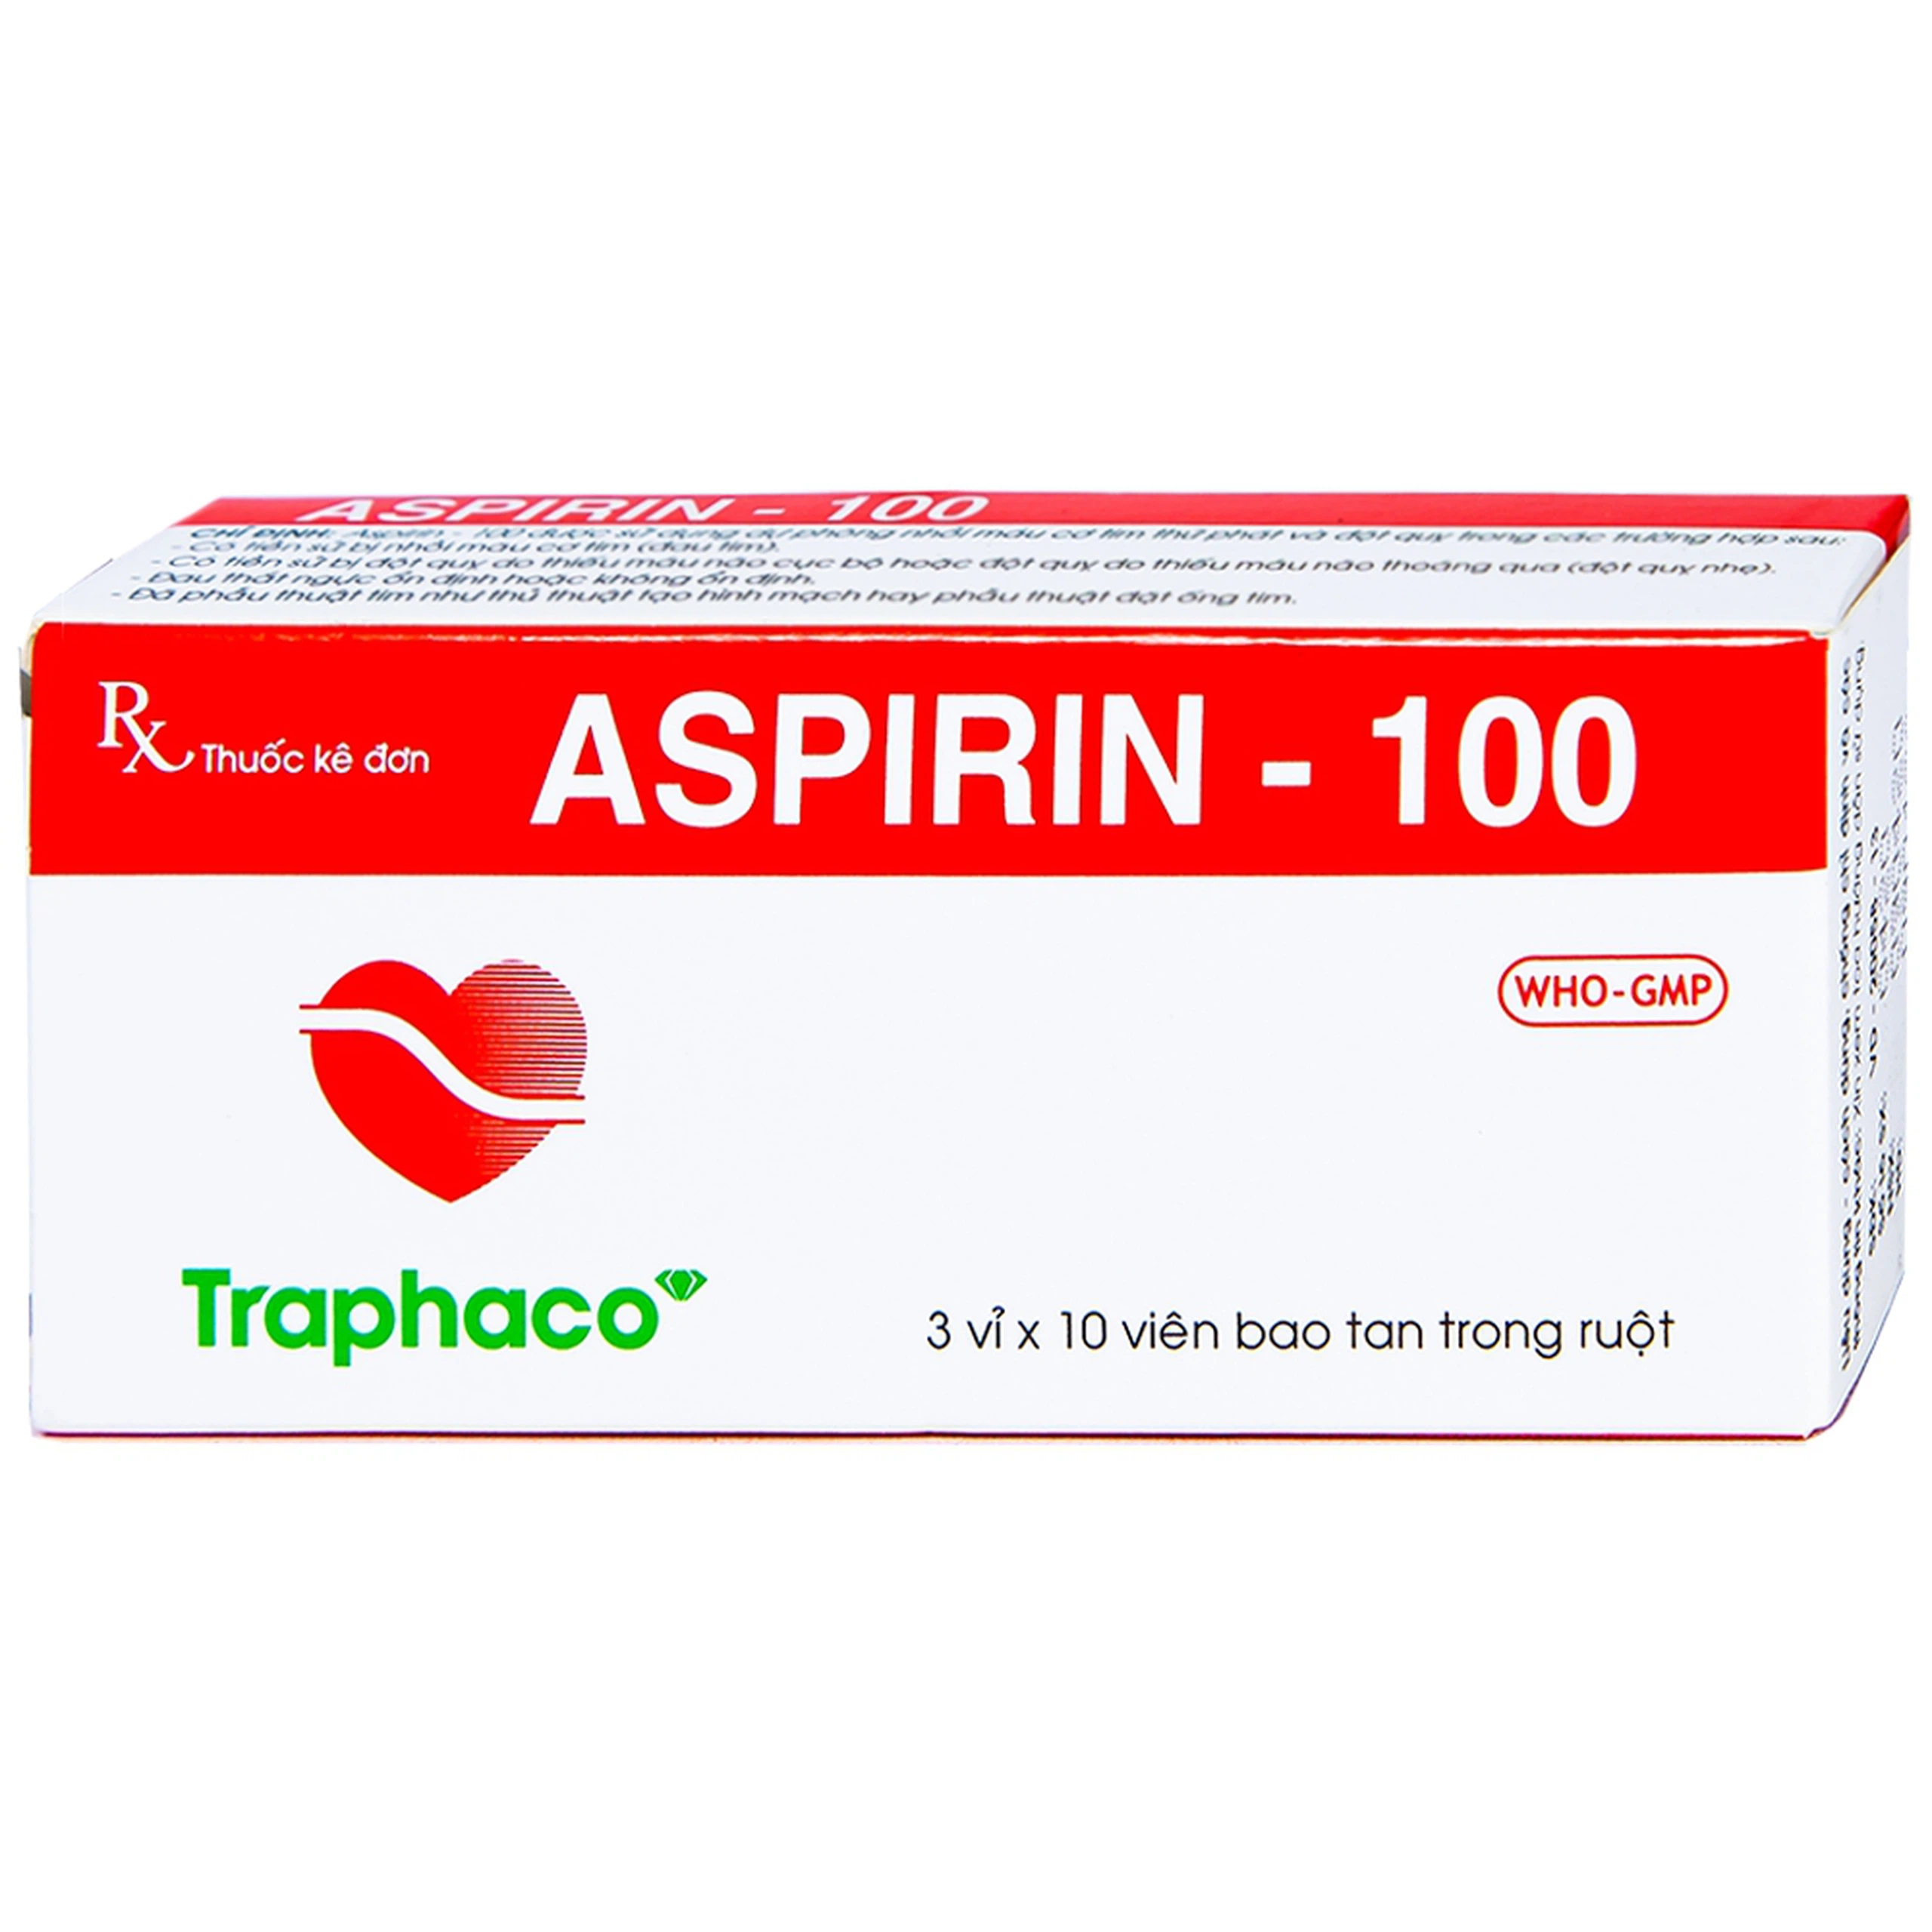 Thuốc Aspirin 100mg Traphaco phòng ngừa nhồi máu cơ tim, đột quỵ (3 vỉ x 10 viên)